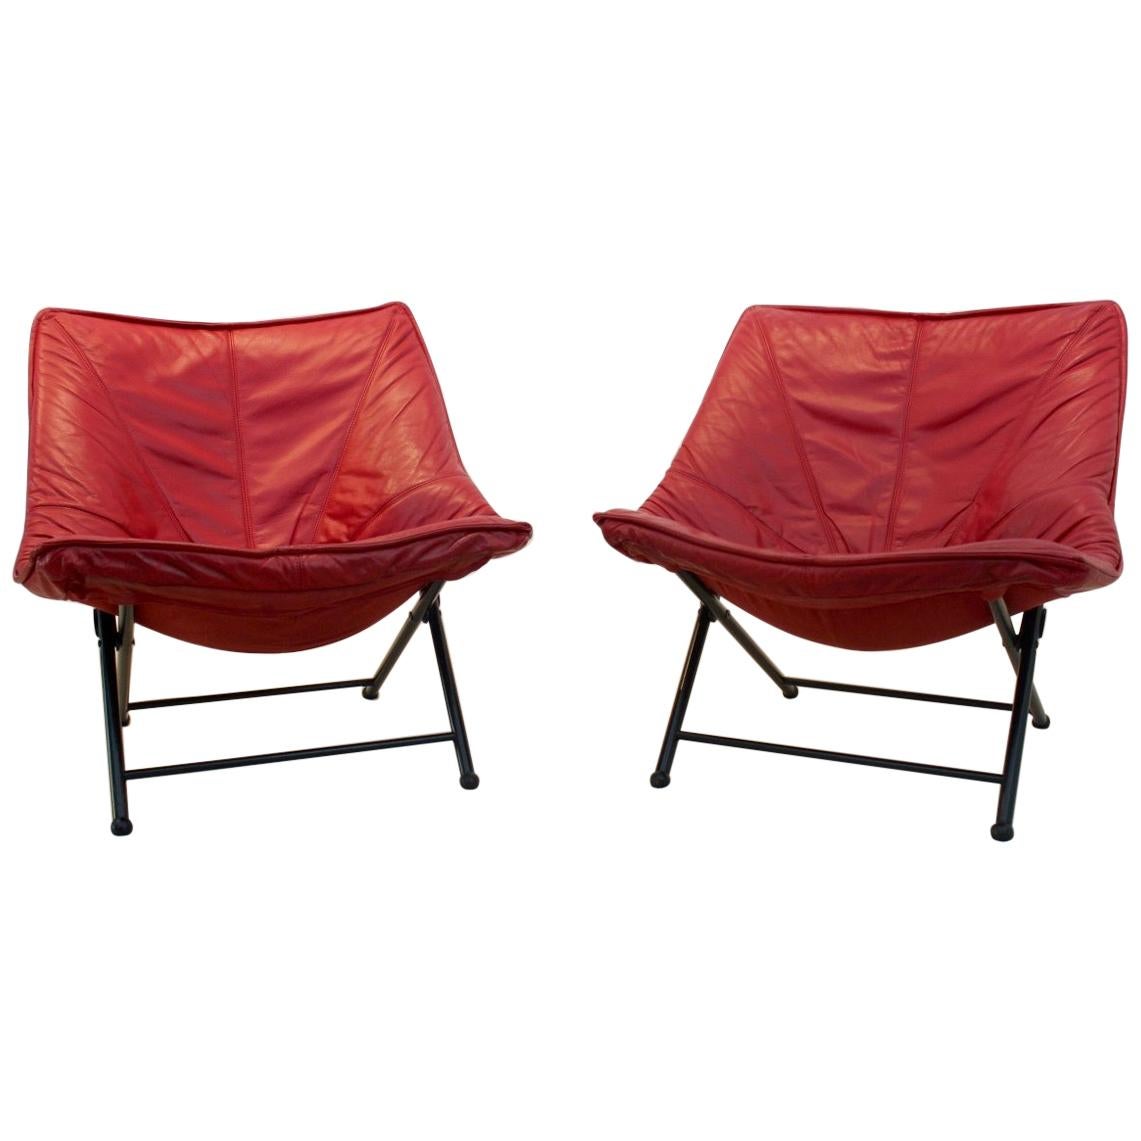 Magnifique ensemble de fauteuils pliables Molinari conçus par Teun van Zanten, années 1970